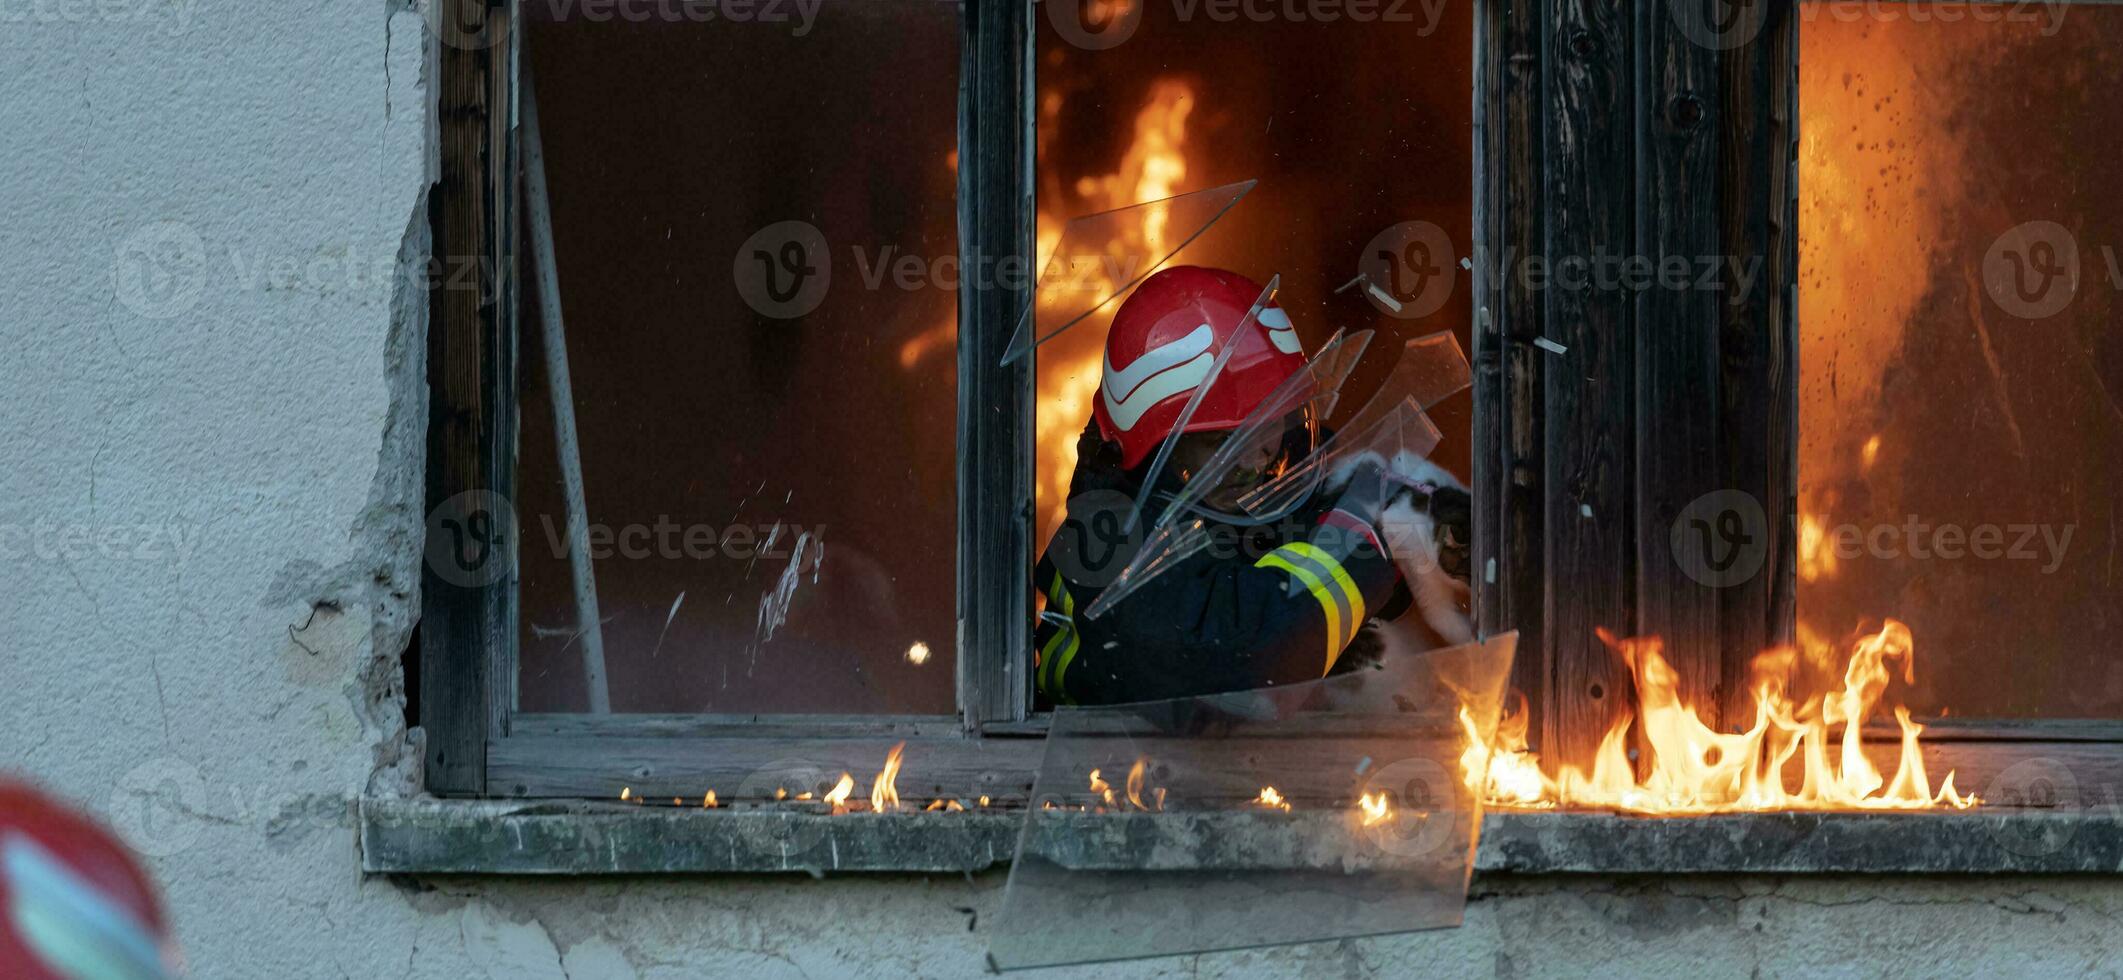 bombero héroe que lleva bebé niña fuera desde ardiente edificio zona desde fuego incidente. rescate personas desde peligroso sitio foto